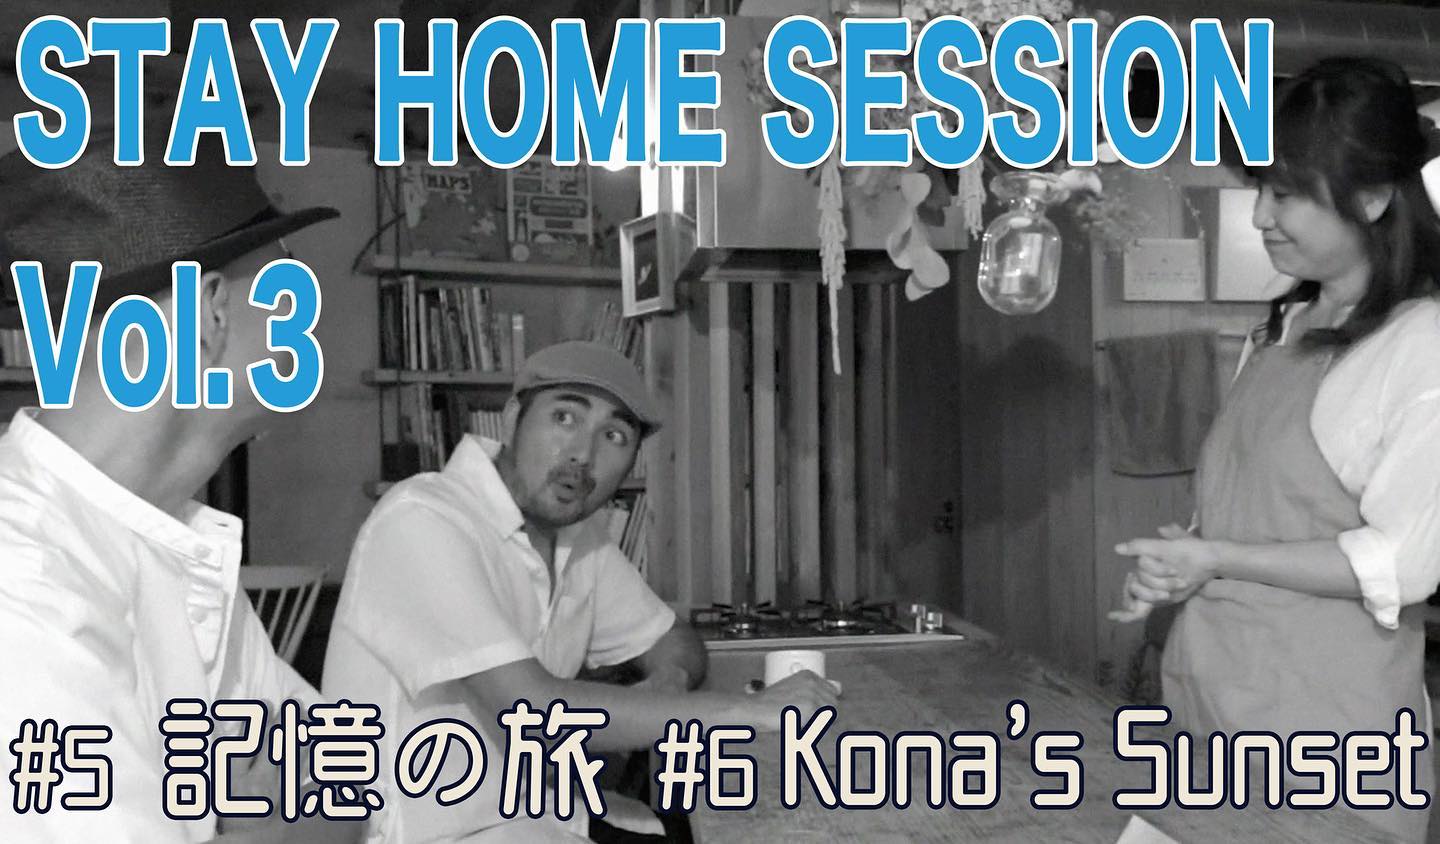 ぱんぱかトリオ自主制作PV“STAY HOME SESSION”第3弾公開しました〜！曲は、沖縄での旅の情景を歌詞にした”記憶の旅”と初めて行ったハワイの思い出の曲”Kona’s Sunset”です！さらに！今回のPV制作プロジェクトでは音楽だけでなく”ぱんぱか劇場”と題して映画もこさえてみました！出演：ぱんぱかトリオ撮影：古原 嗣健監督：カワムラでお送りする無声映画風ショートムービー。こちらもお楽しみください〜。ご視聴は下記アドレスからできます。https://youtu.be/Vee2tkCRXnEyoutubeチャンネル高評価、チャンネル登録もしていただけると更に嬉しいです！#ぱんぱかトリオ#自主制作#pv #okitahome